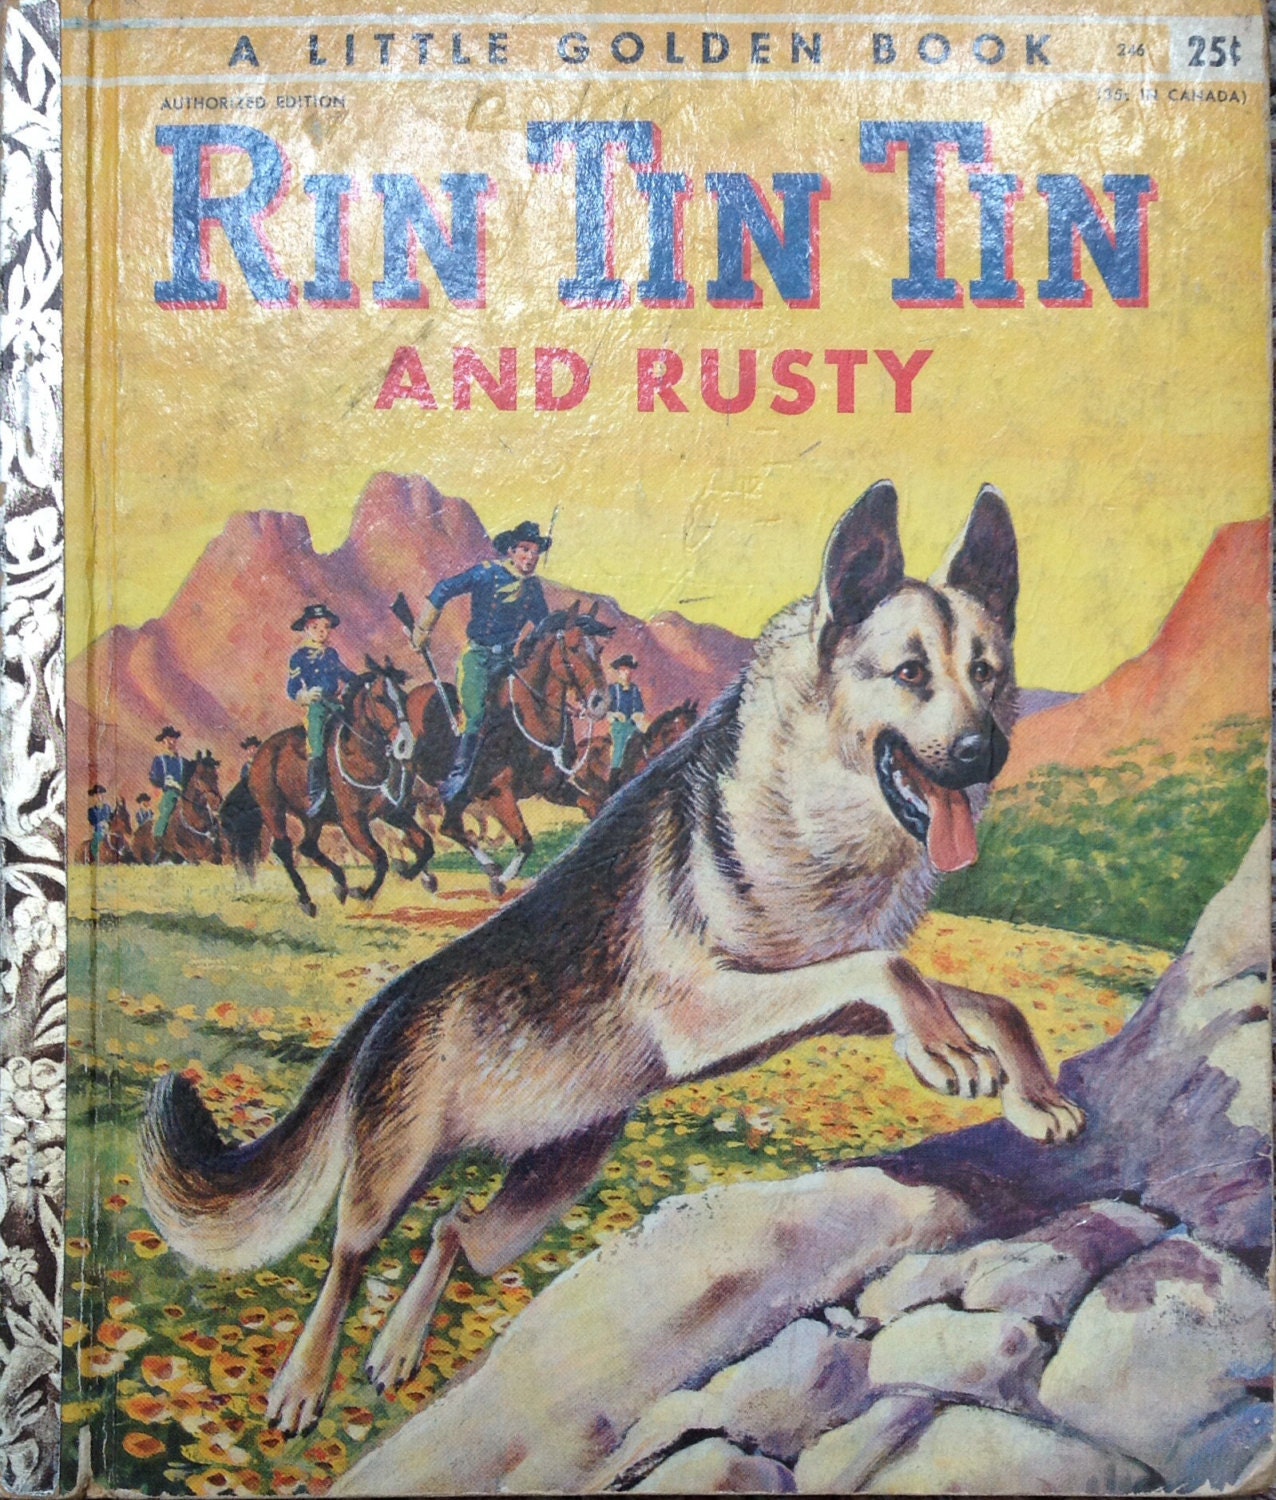 book rin tin tin